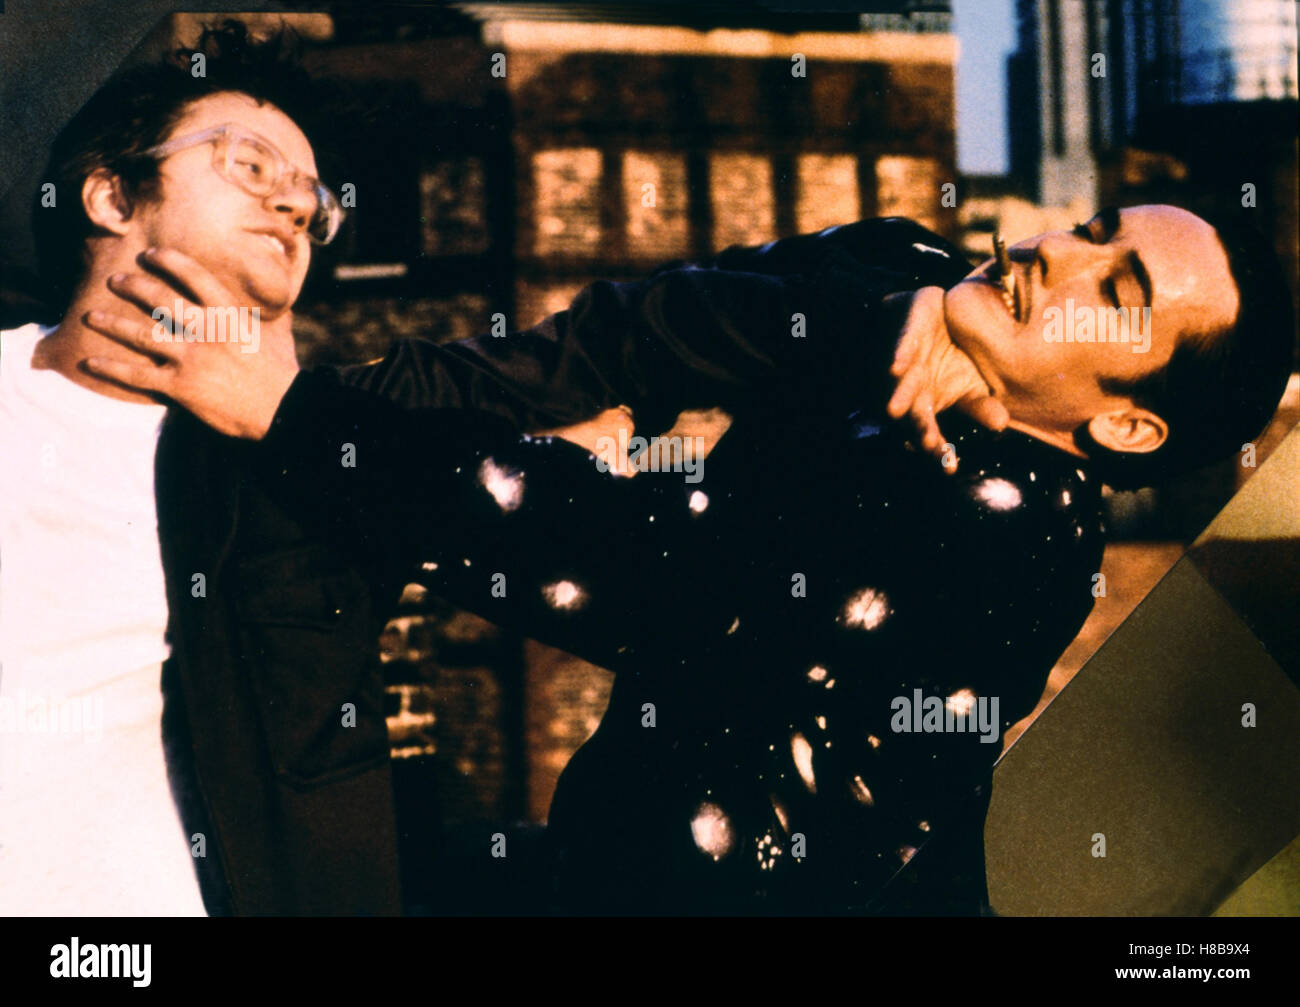 Tapeheads - Verrueckt auf Video, (TAPEHEADS) USA 1988, Regie: Bill Fishman, TIM ROBBINS, JOHN CUSACK, Key: Streit, Auseinandersetzung, Kampf, Rauferei, Tätlichkeit, Stock Photo